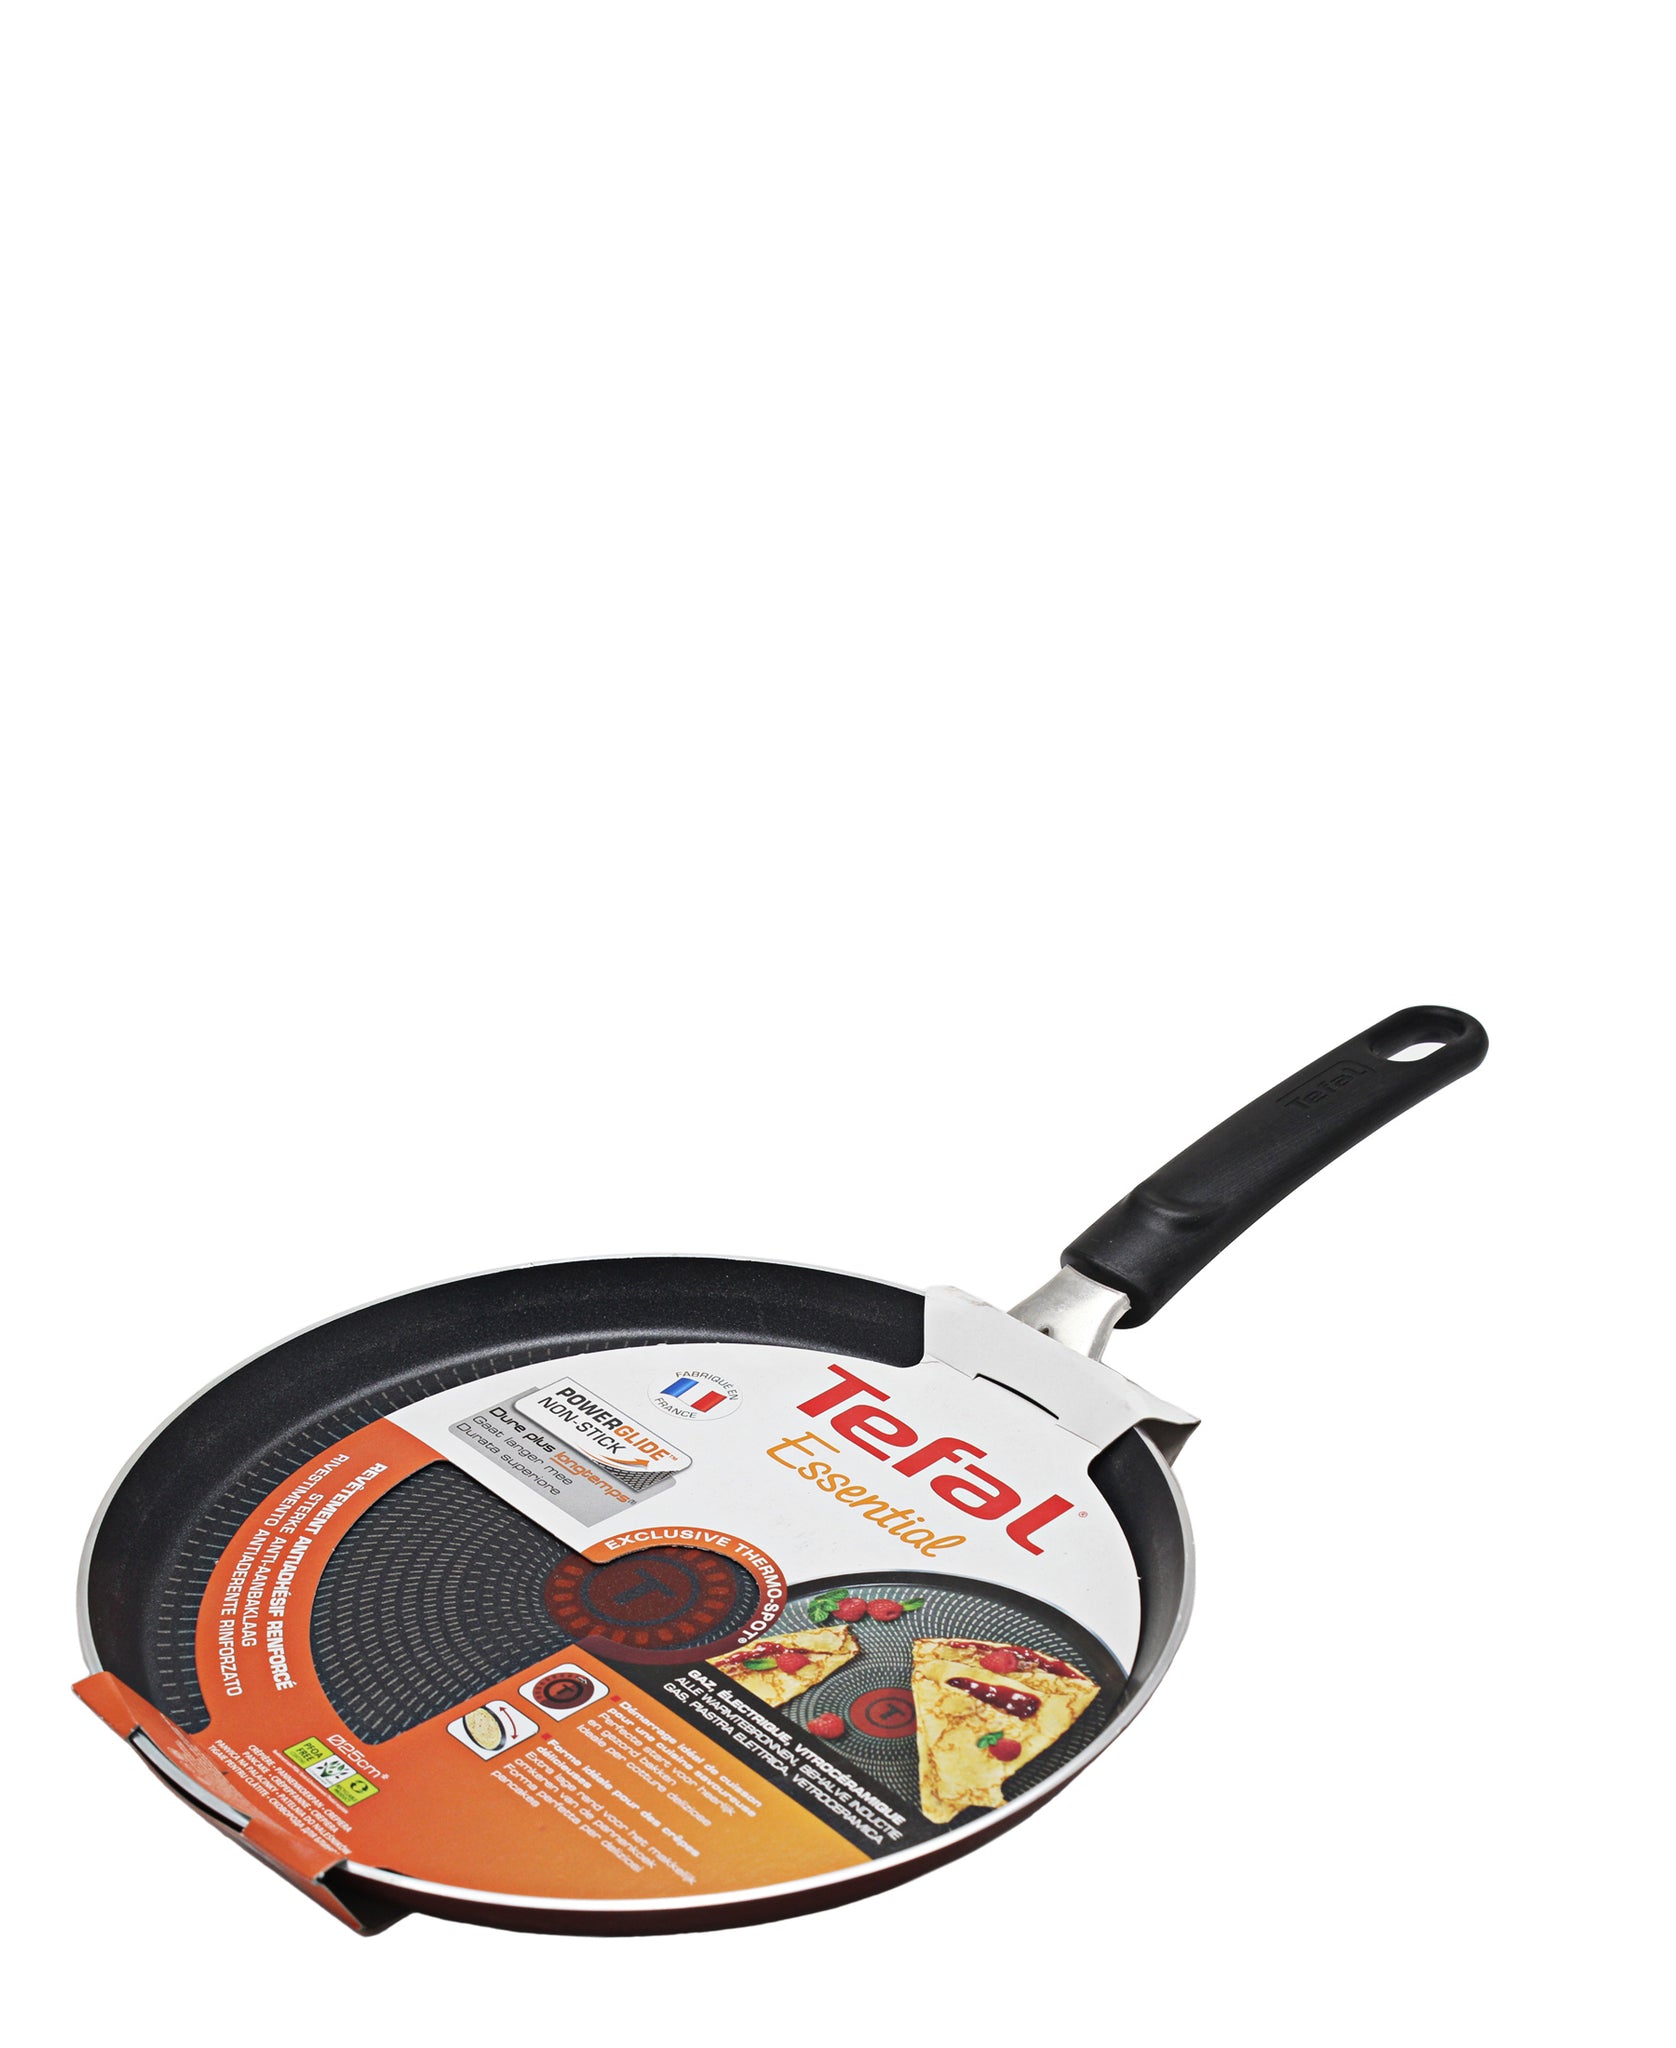 Tefal Essential 25cm Frying Pan - Black & Red